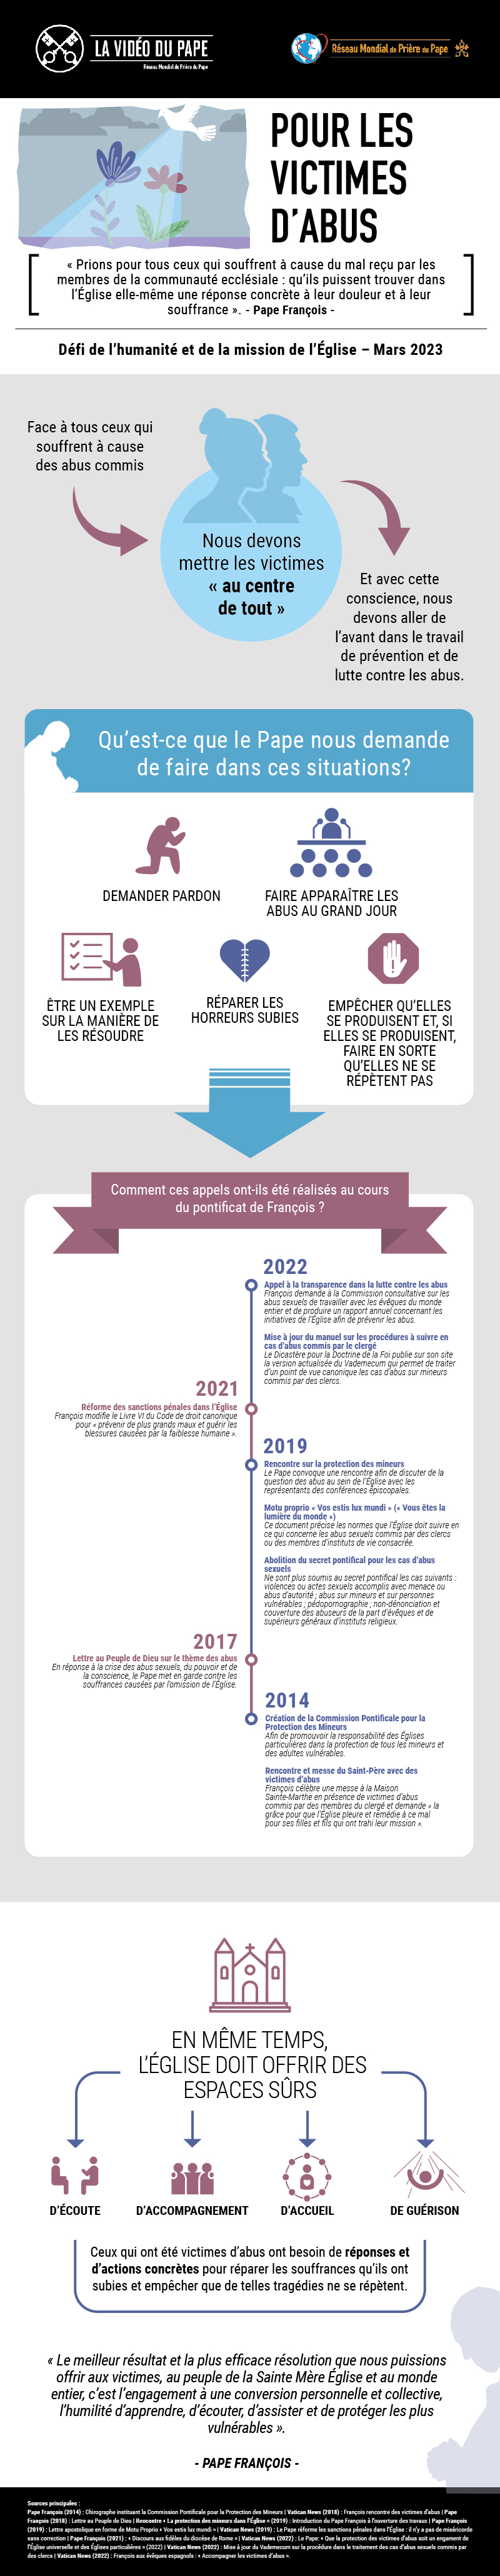 Infographic-TPV-3-2023-FR-Pour-les-victimes-dabus